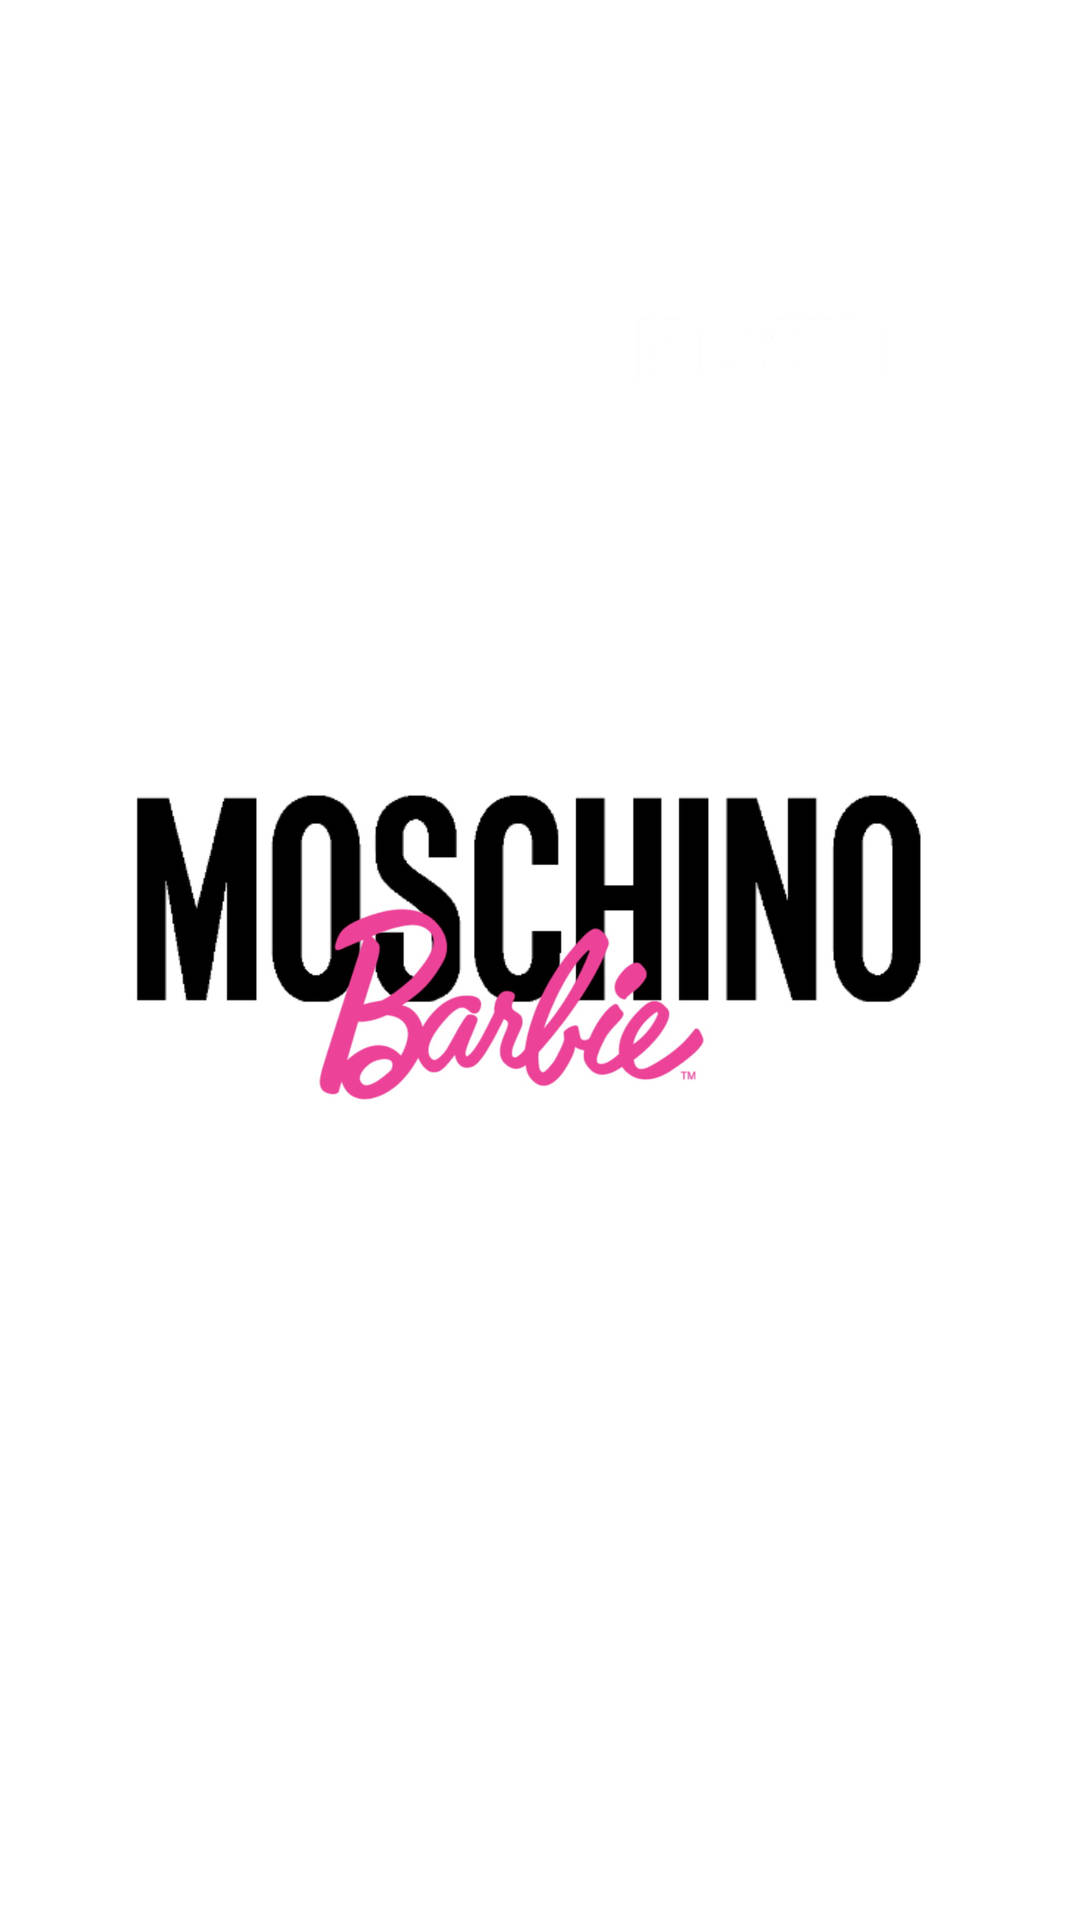 Moschino Barbie Papel De Parede: Papel de Parede